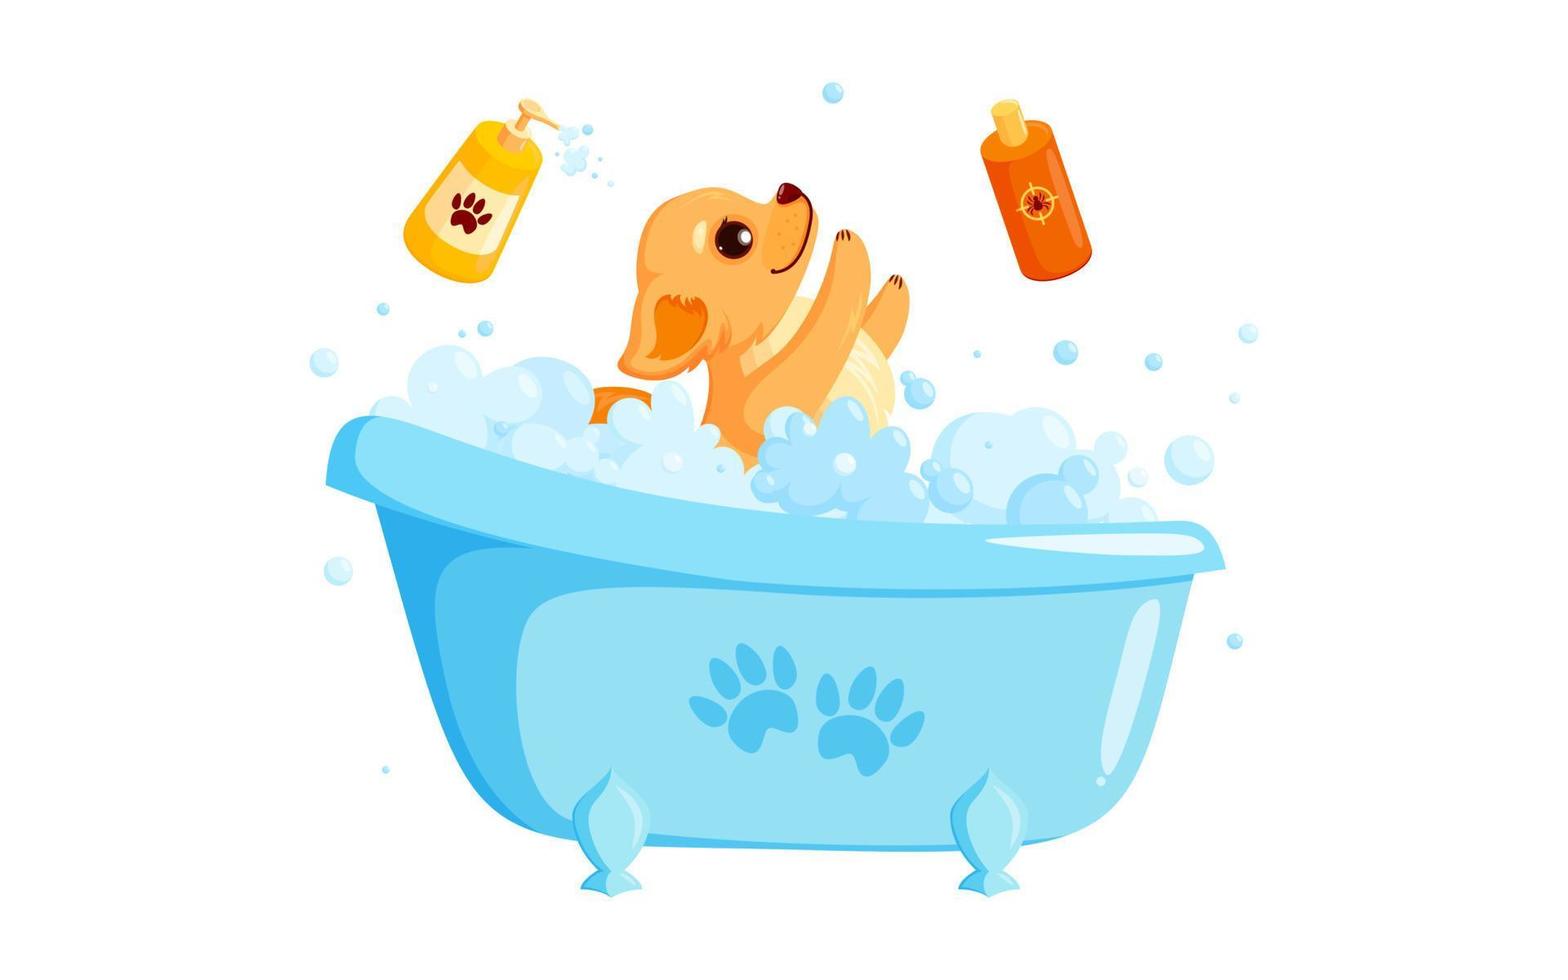 hund grooming i en bad med sällskapsdjur schampo. lekfull chihuahua valp i grooming service. vektor illustration